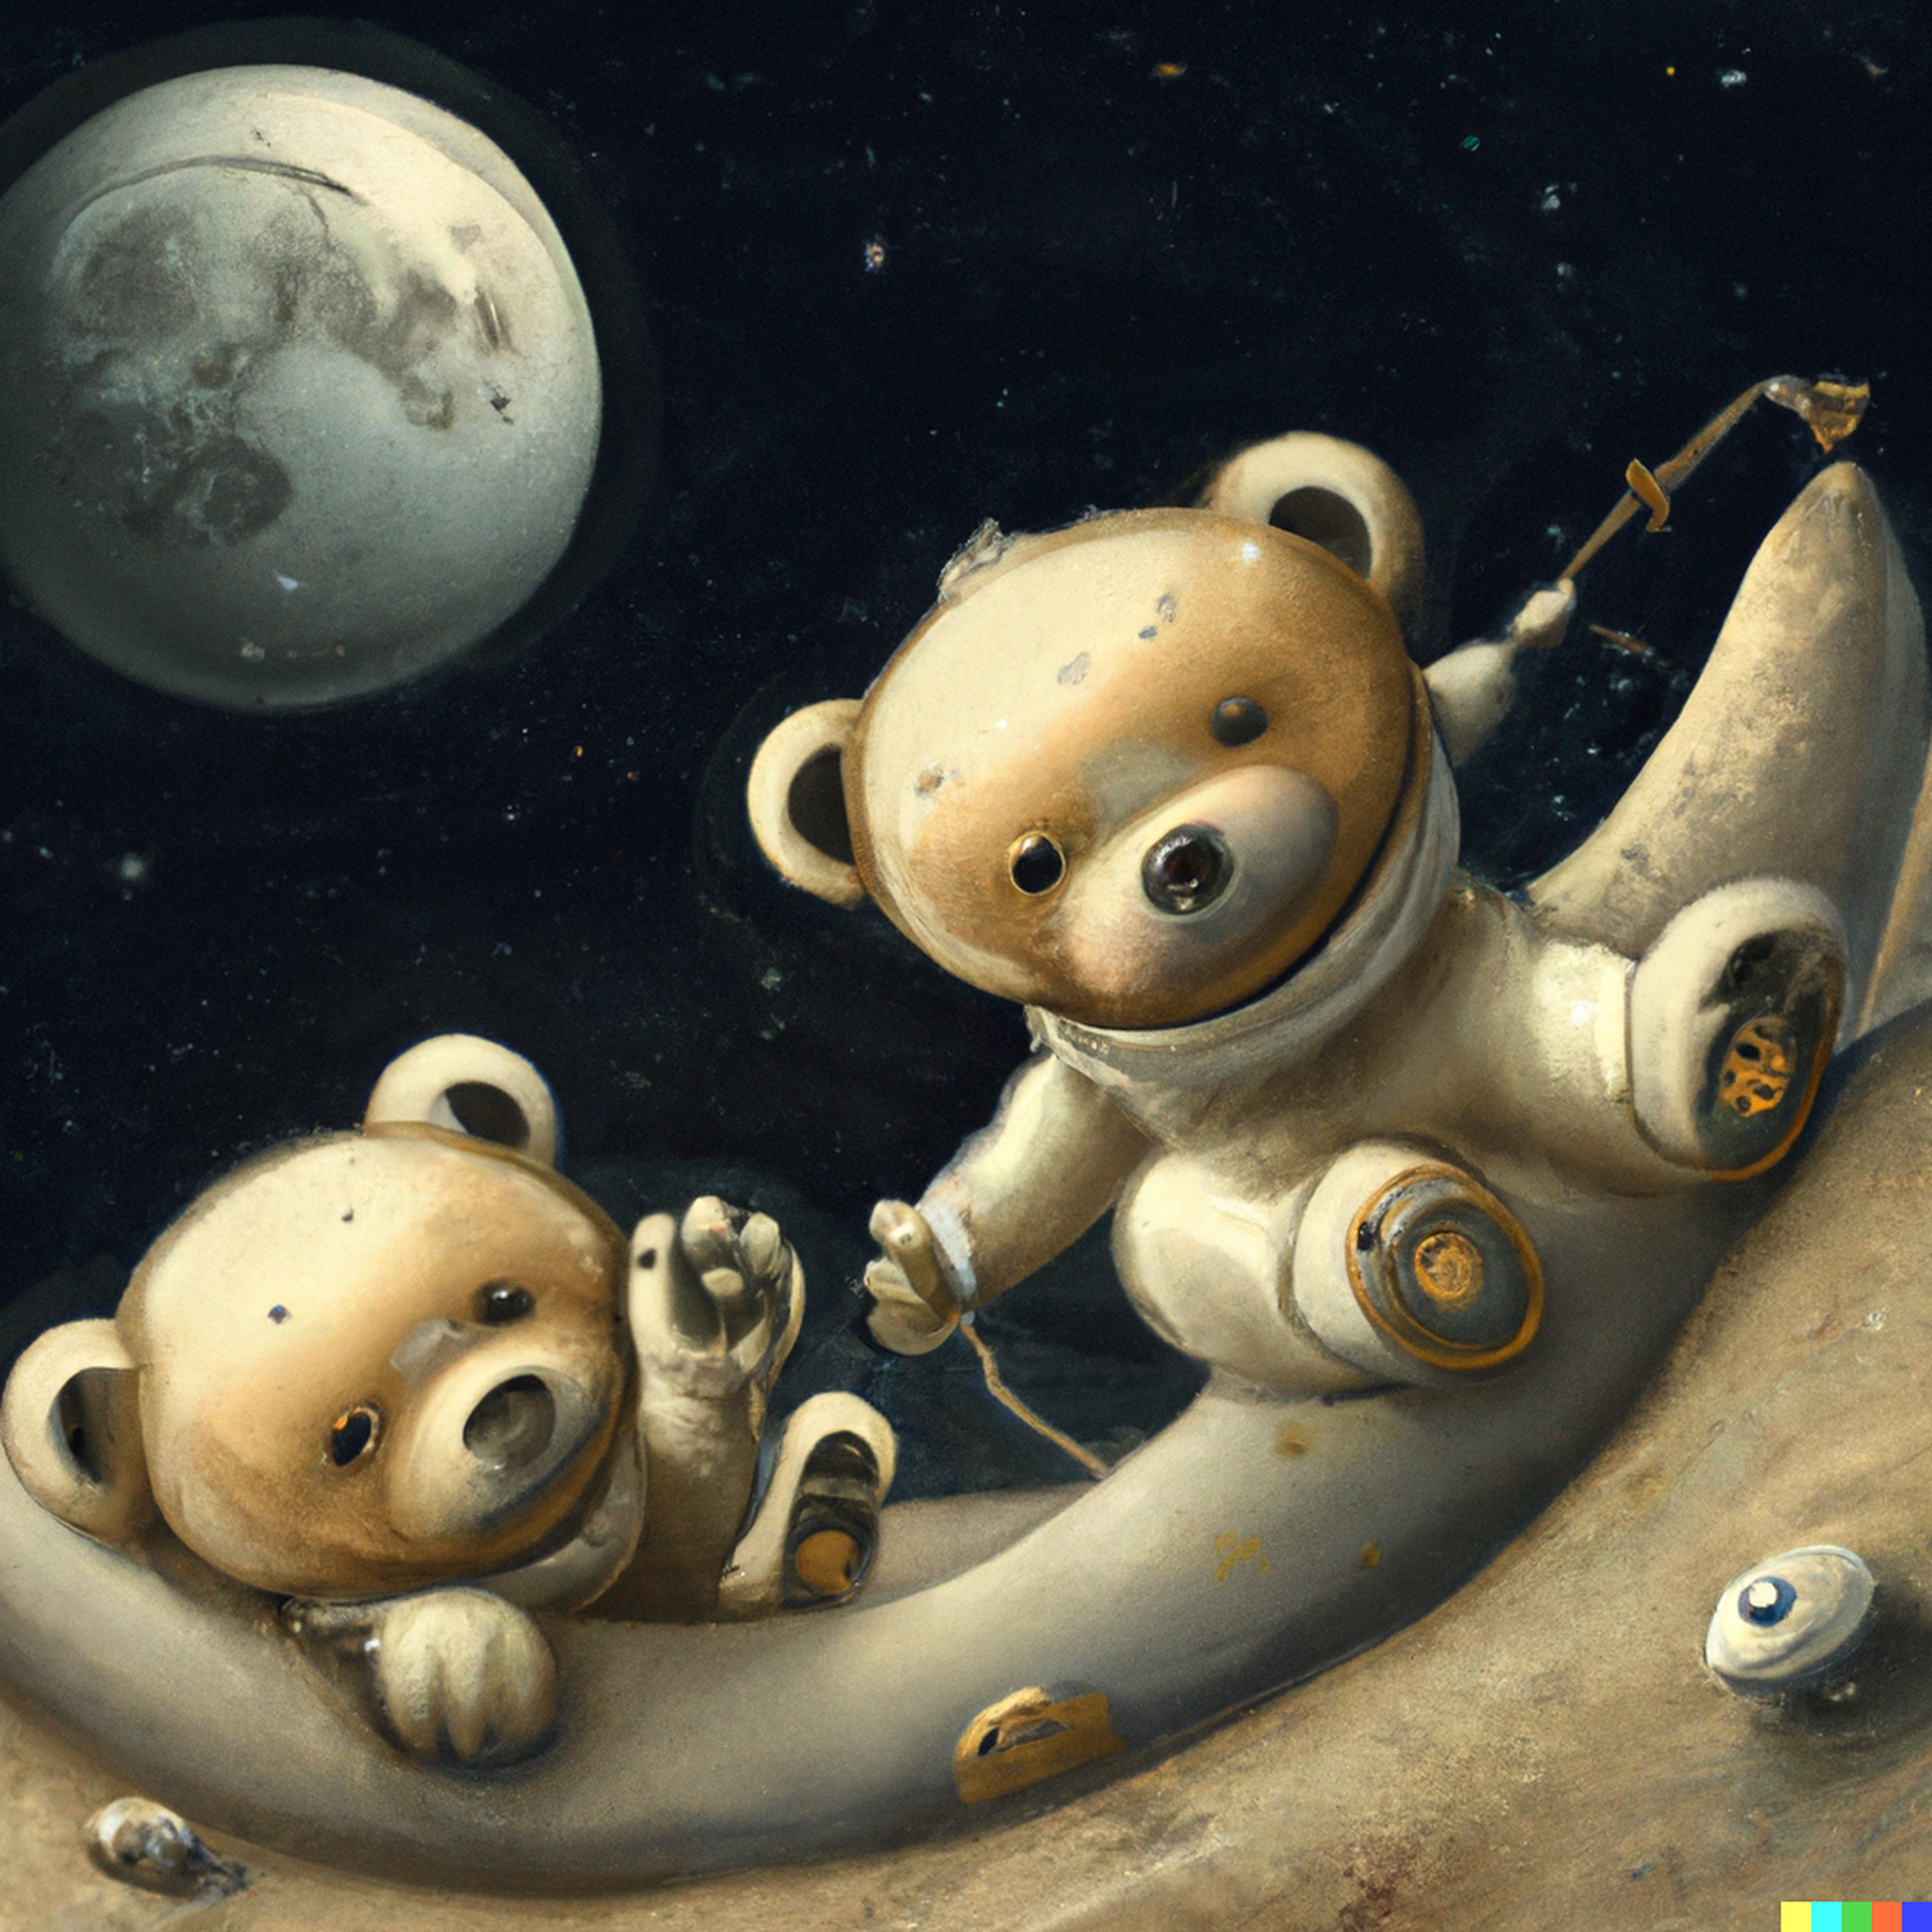 “Teddy bears on the moon, digital art,” created by DALL-E.